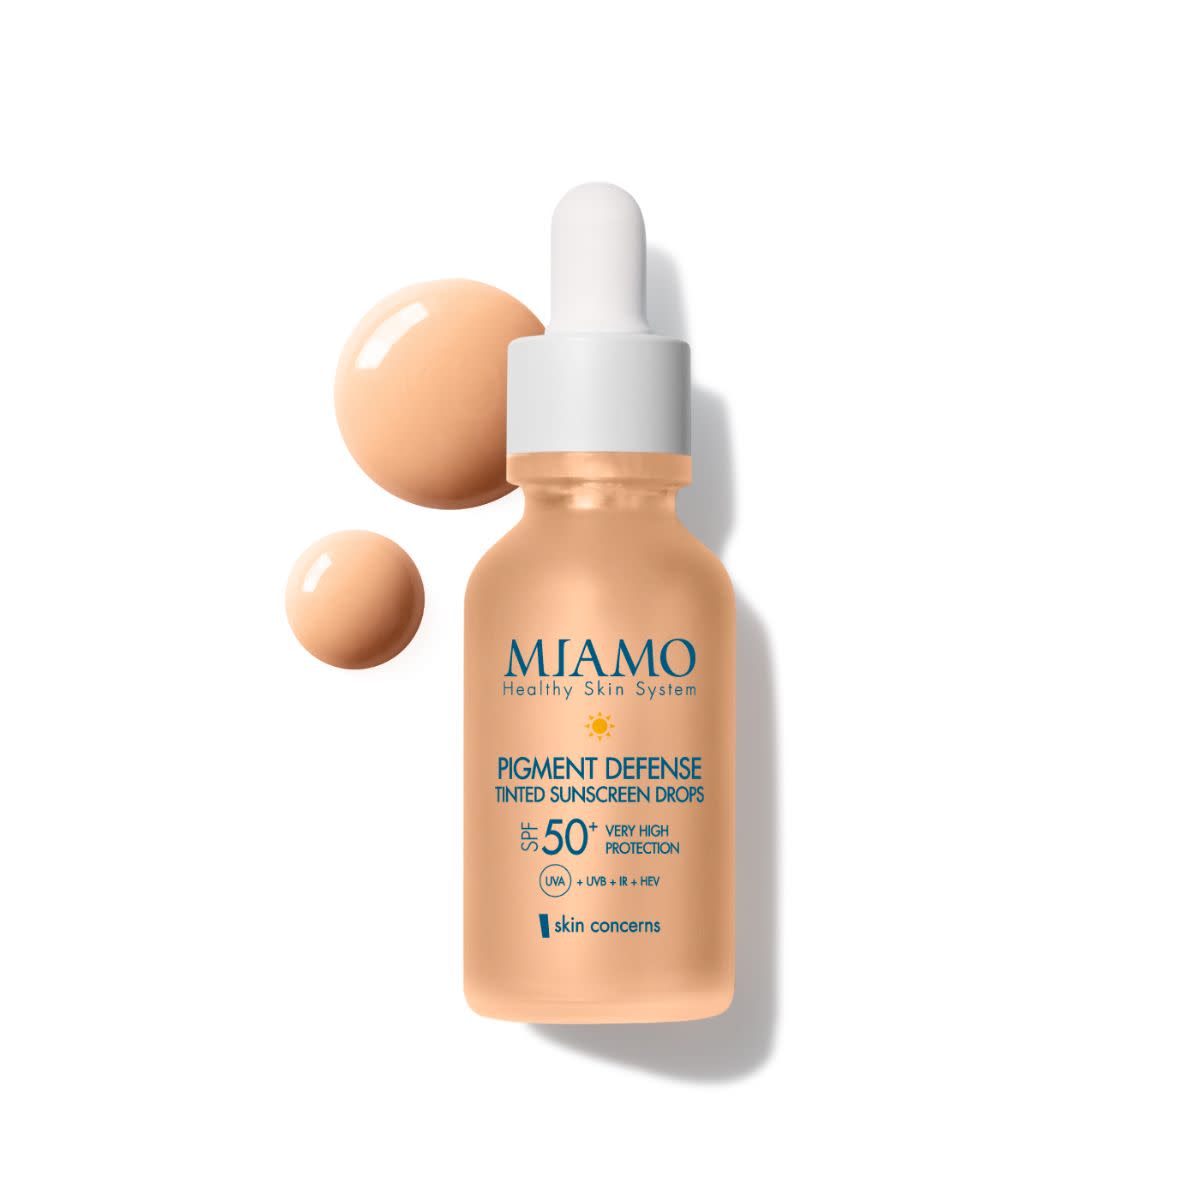 983511369 - Miamo Pigment Defense Tinted Sunscreen Drops Siero Spf50+ 30ml - 4709236_2.jpg